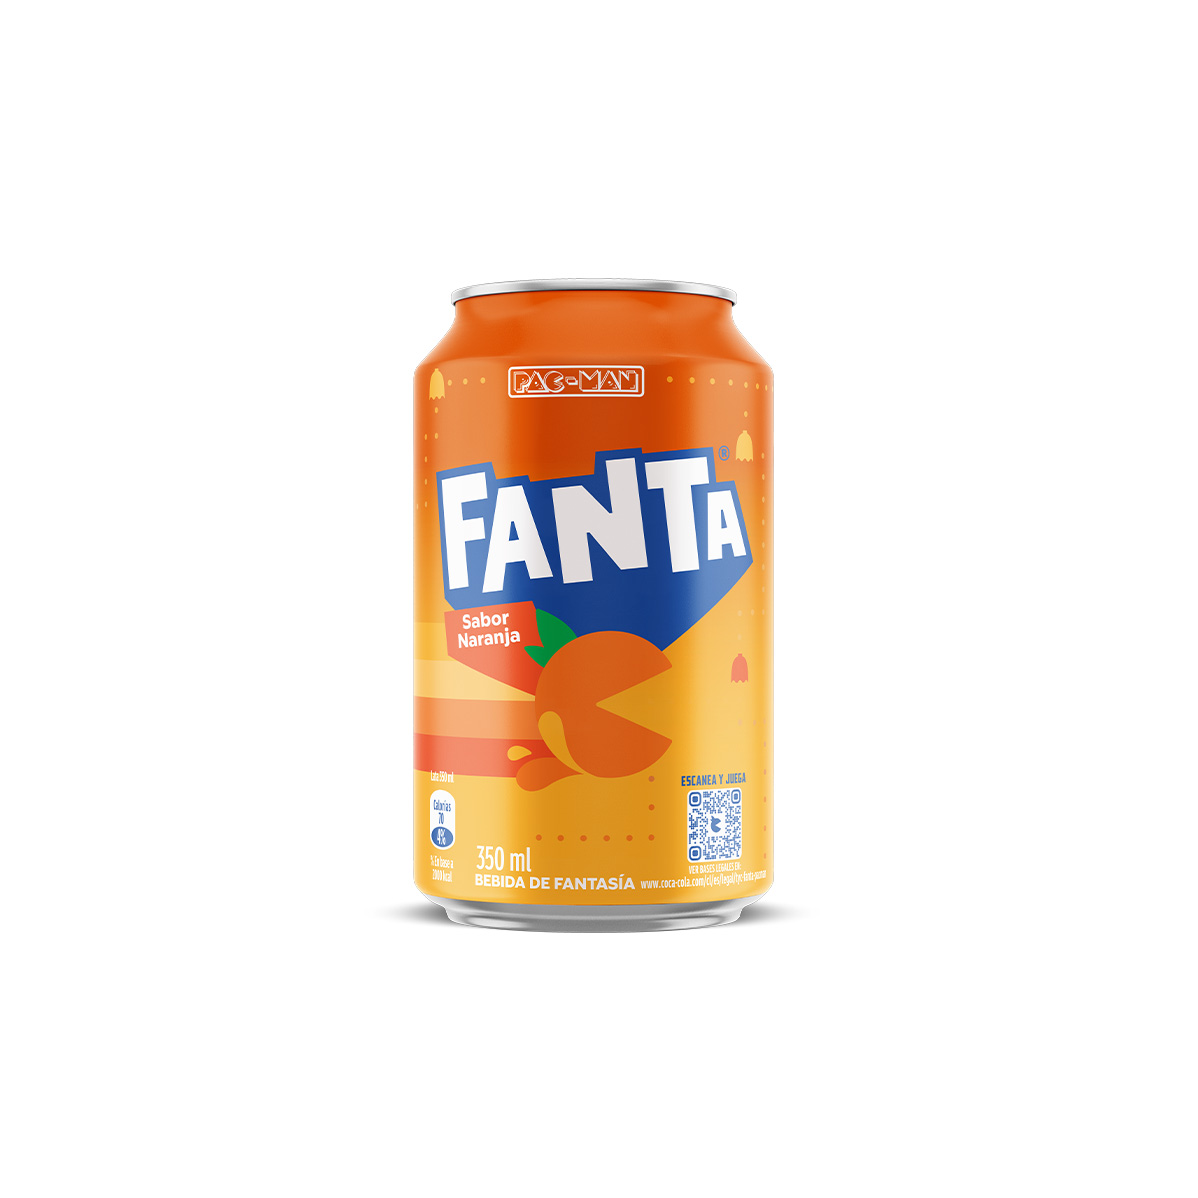  Lata de 350 ml de la edición limitada de Fanta PAC-MAN sabor Naranja.